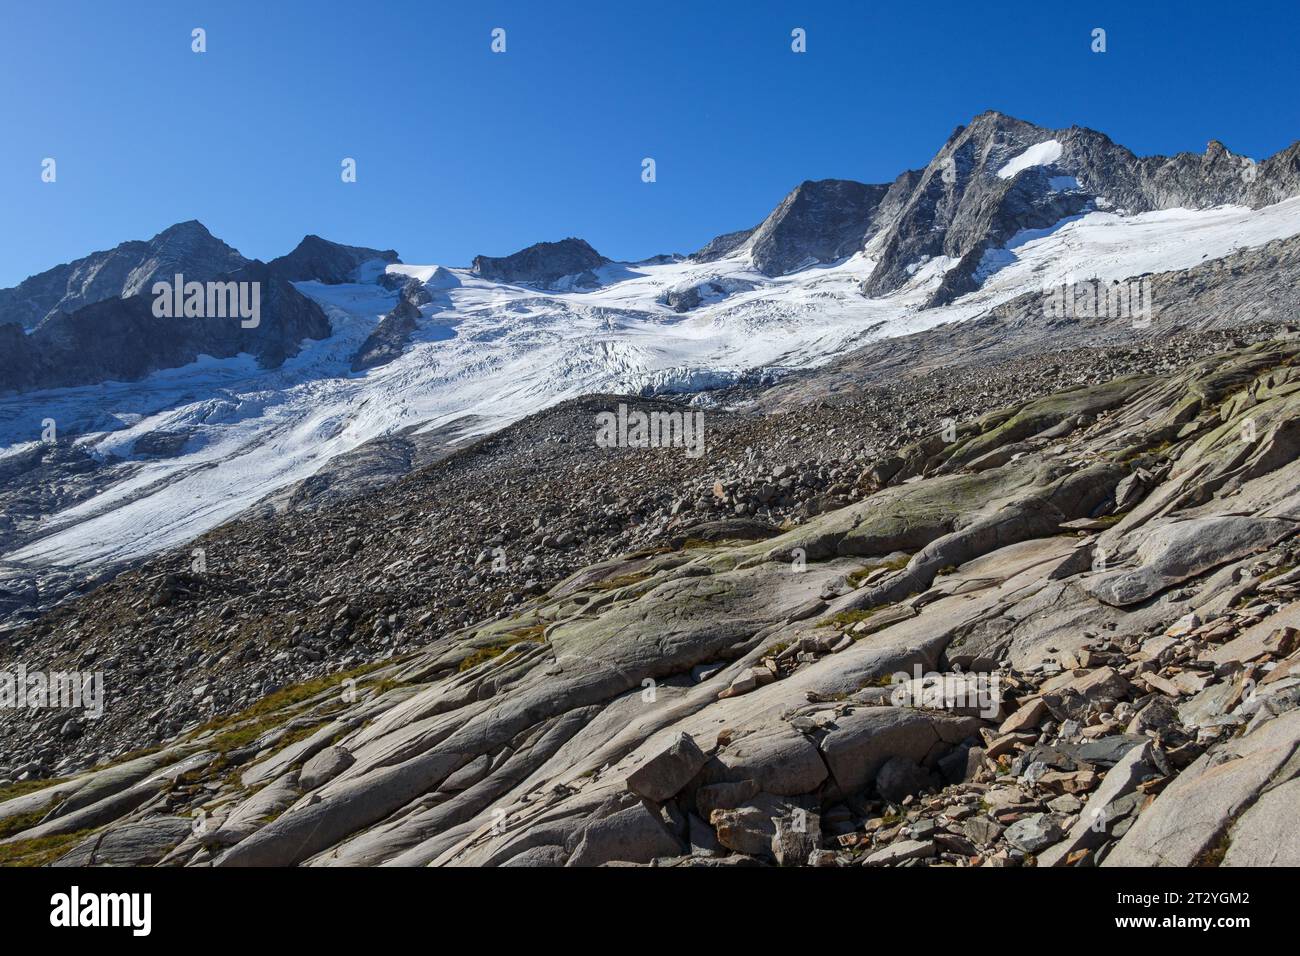 Vue sur le glacier Waxeggkees, roches polies. Vallée alpine de Zemmgrund. Alpes de Zillertal. Tyrol, Autriche, Europe. Banque D'Images